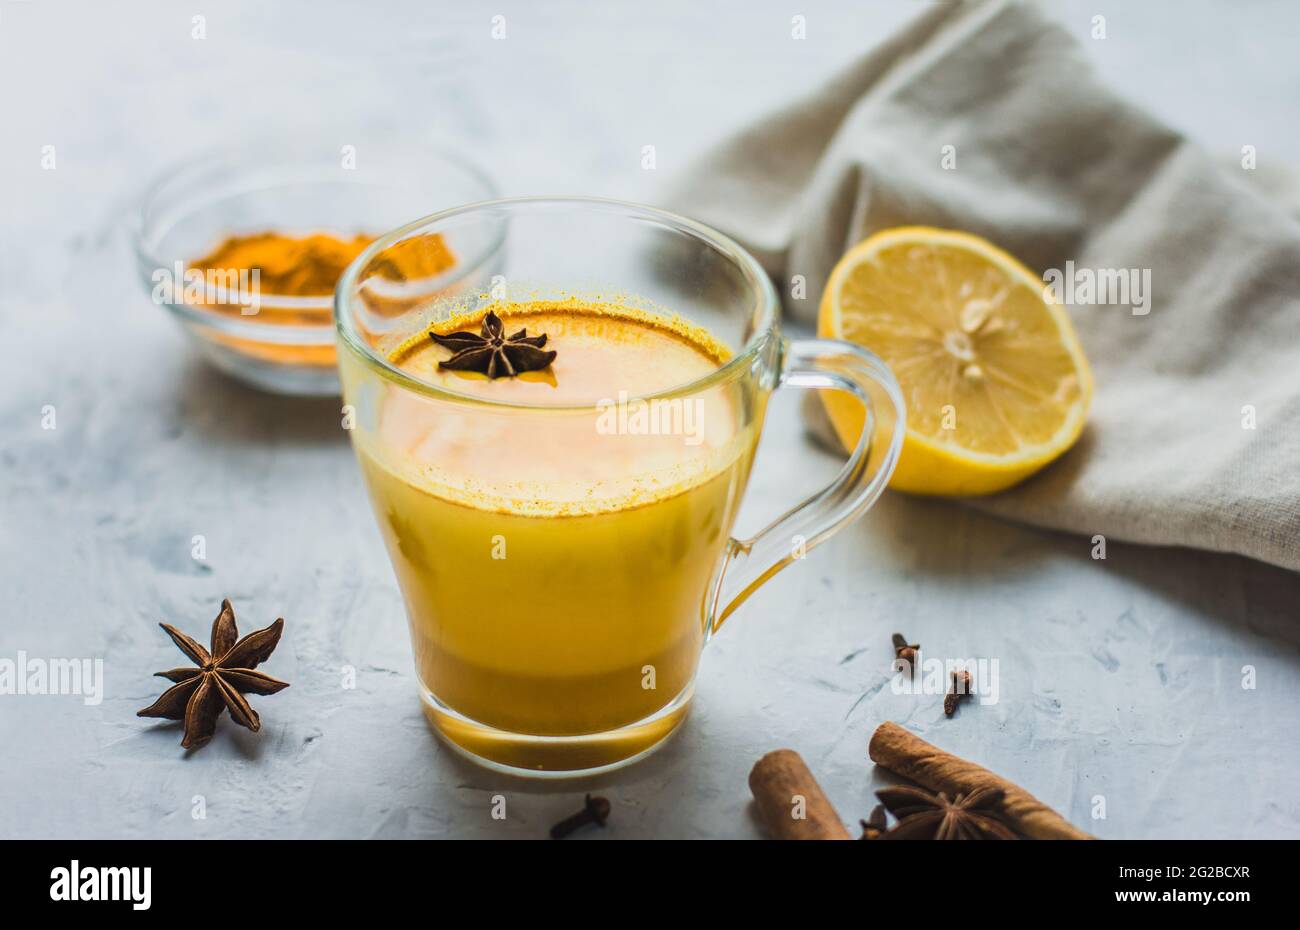 Ein schönes Glas mit goldener Milch, Kurkuma, Gewürzen und Zitrone auf grauem Hintergrund. Gesundes ayurvedisches Getränk. Stärkung des Immunsystems. Antioxi Stockfoto